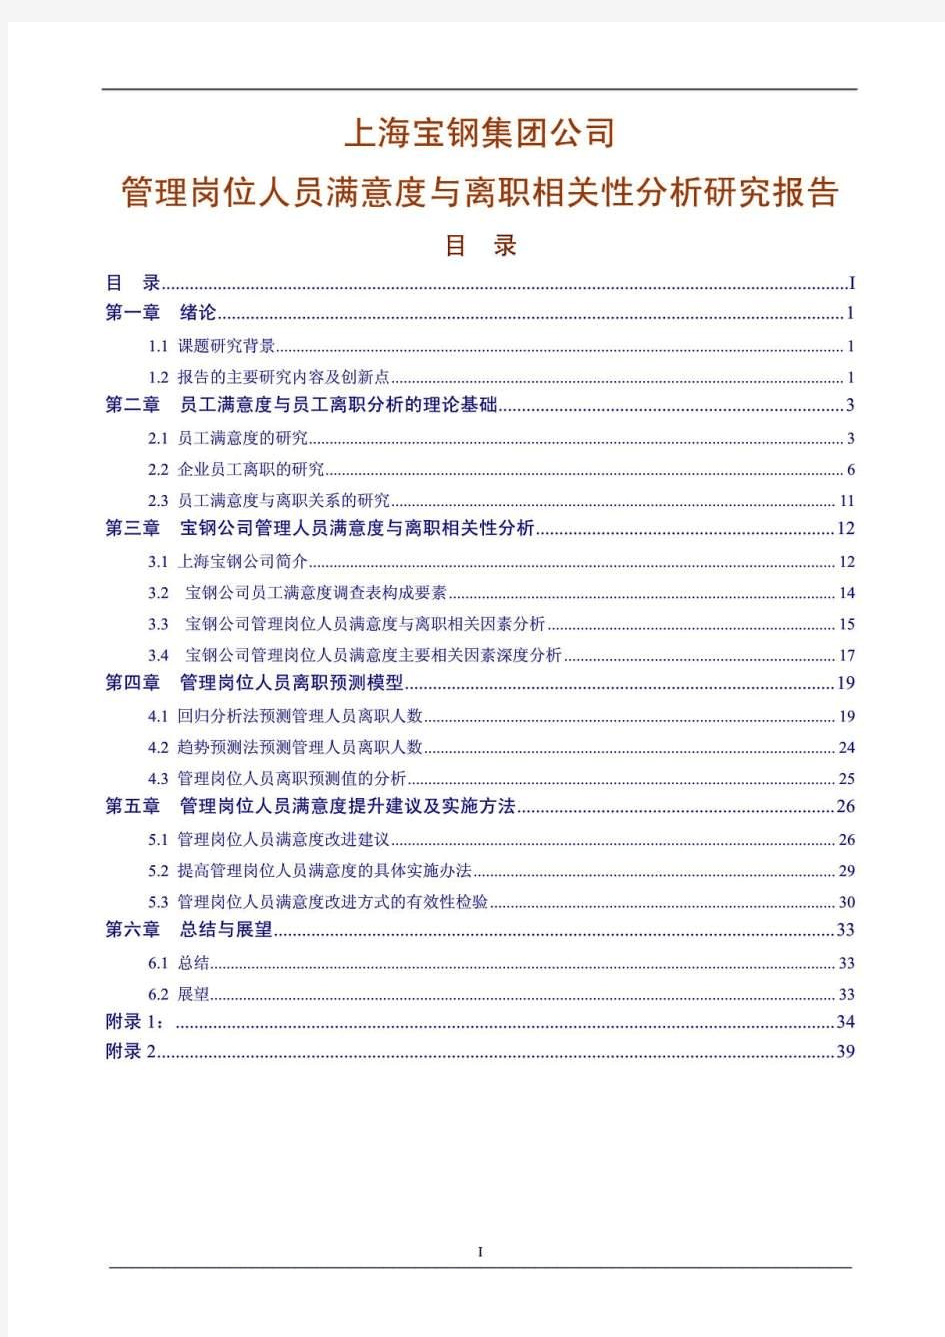 上海宝钢集团公司管理岗位人员满意度与离职相关性分析研究报告